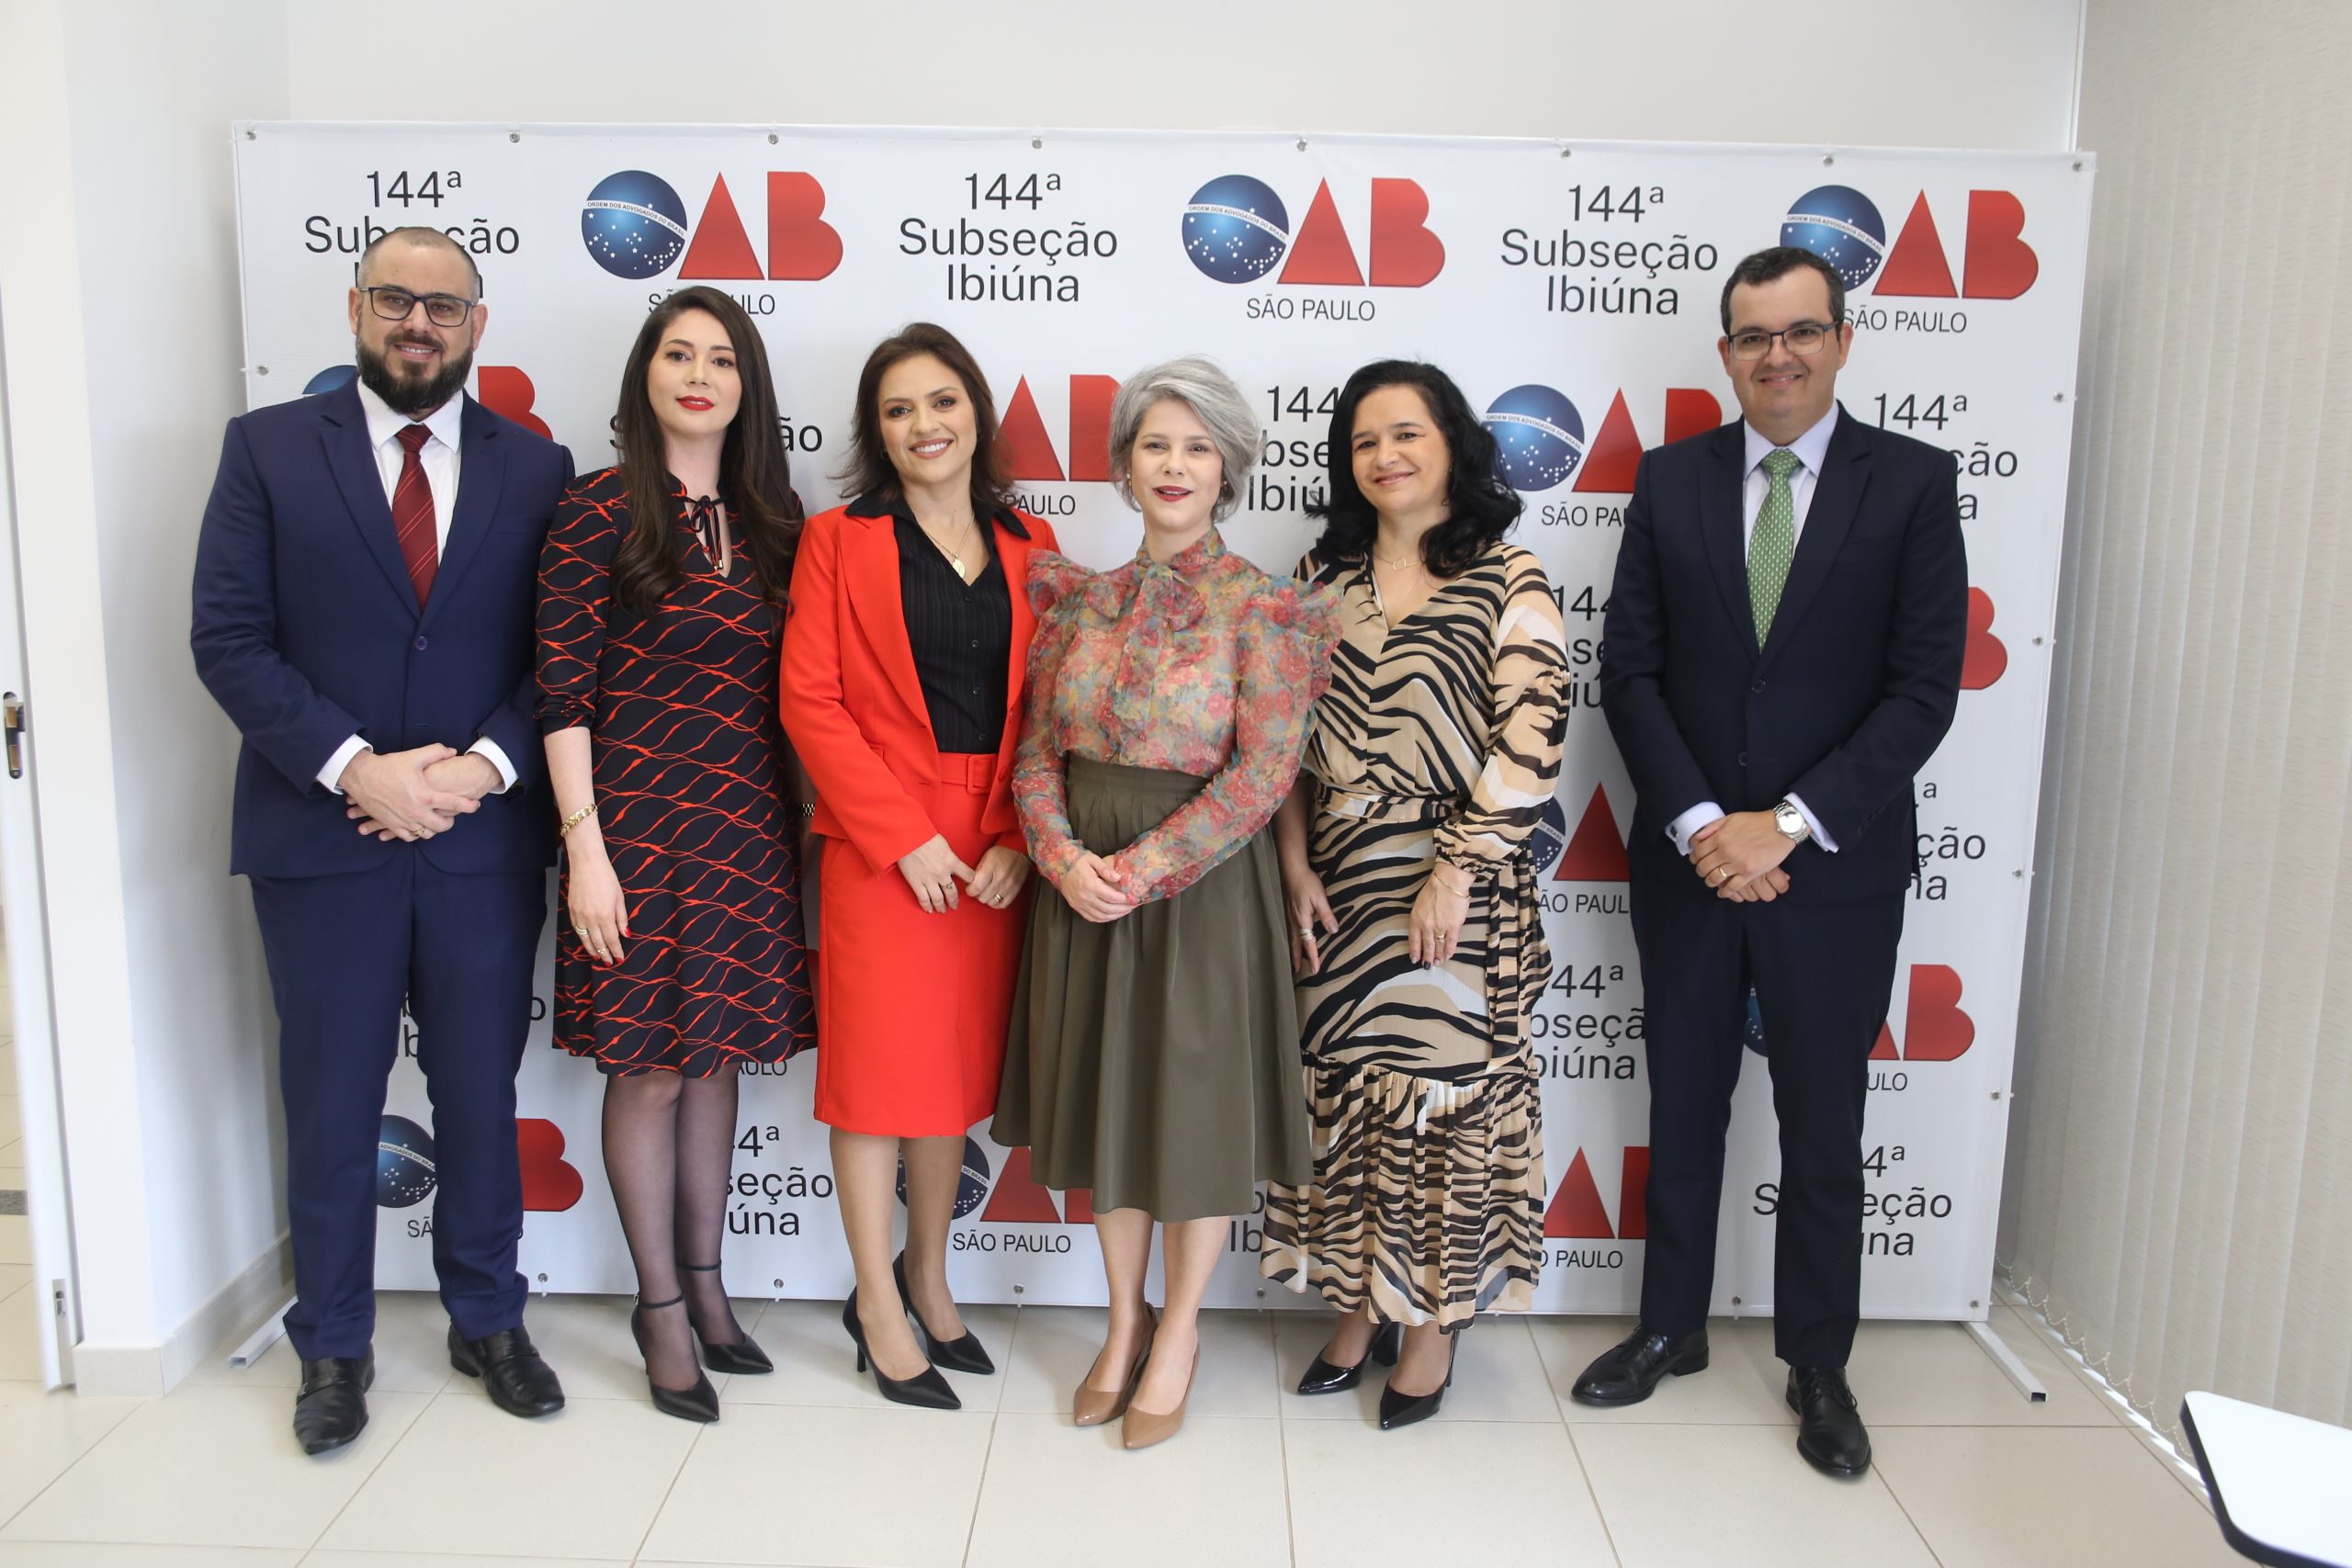 OAB SP participa da cerimônia de posse da diretoria da Subseção de Ibiúna